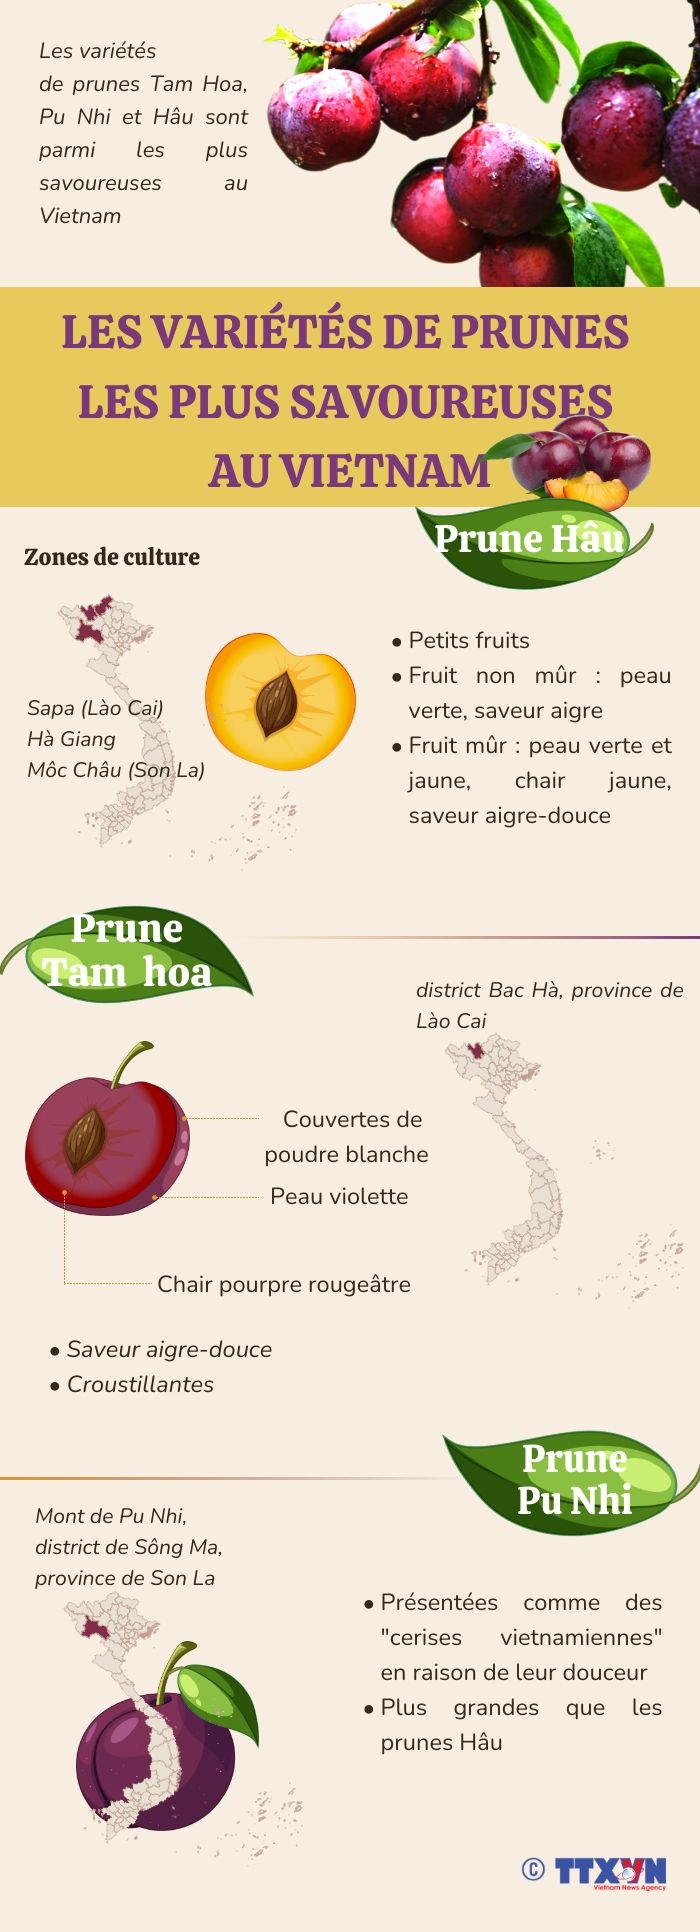 Les varietes de prunes les plus savoureuses au Vietnam hinh anh 1